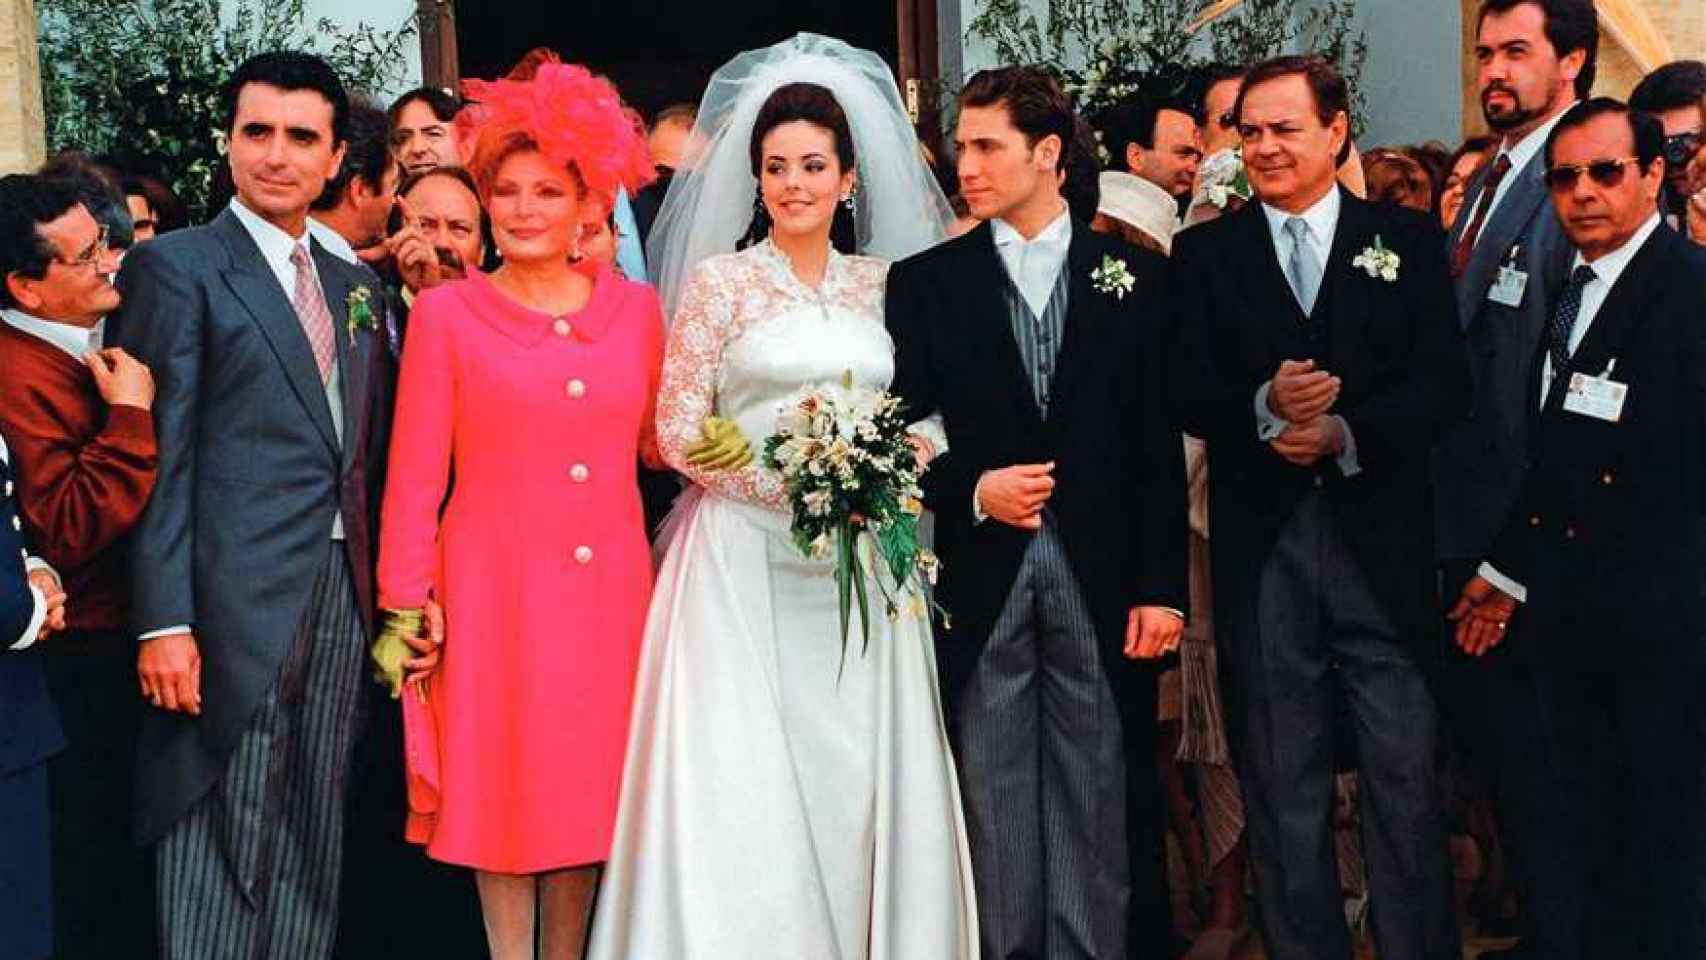 Ortega Cano, Rocío Jurado, Rocío Carrasco, Antonio David Flores y Pedro Carrasco en la gran boda que hoy cumple 25 años.